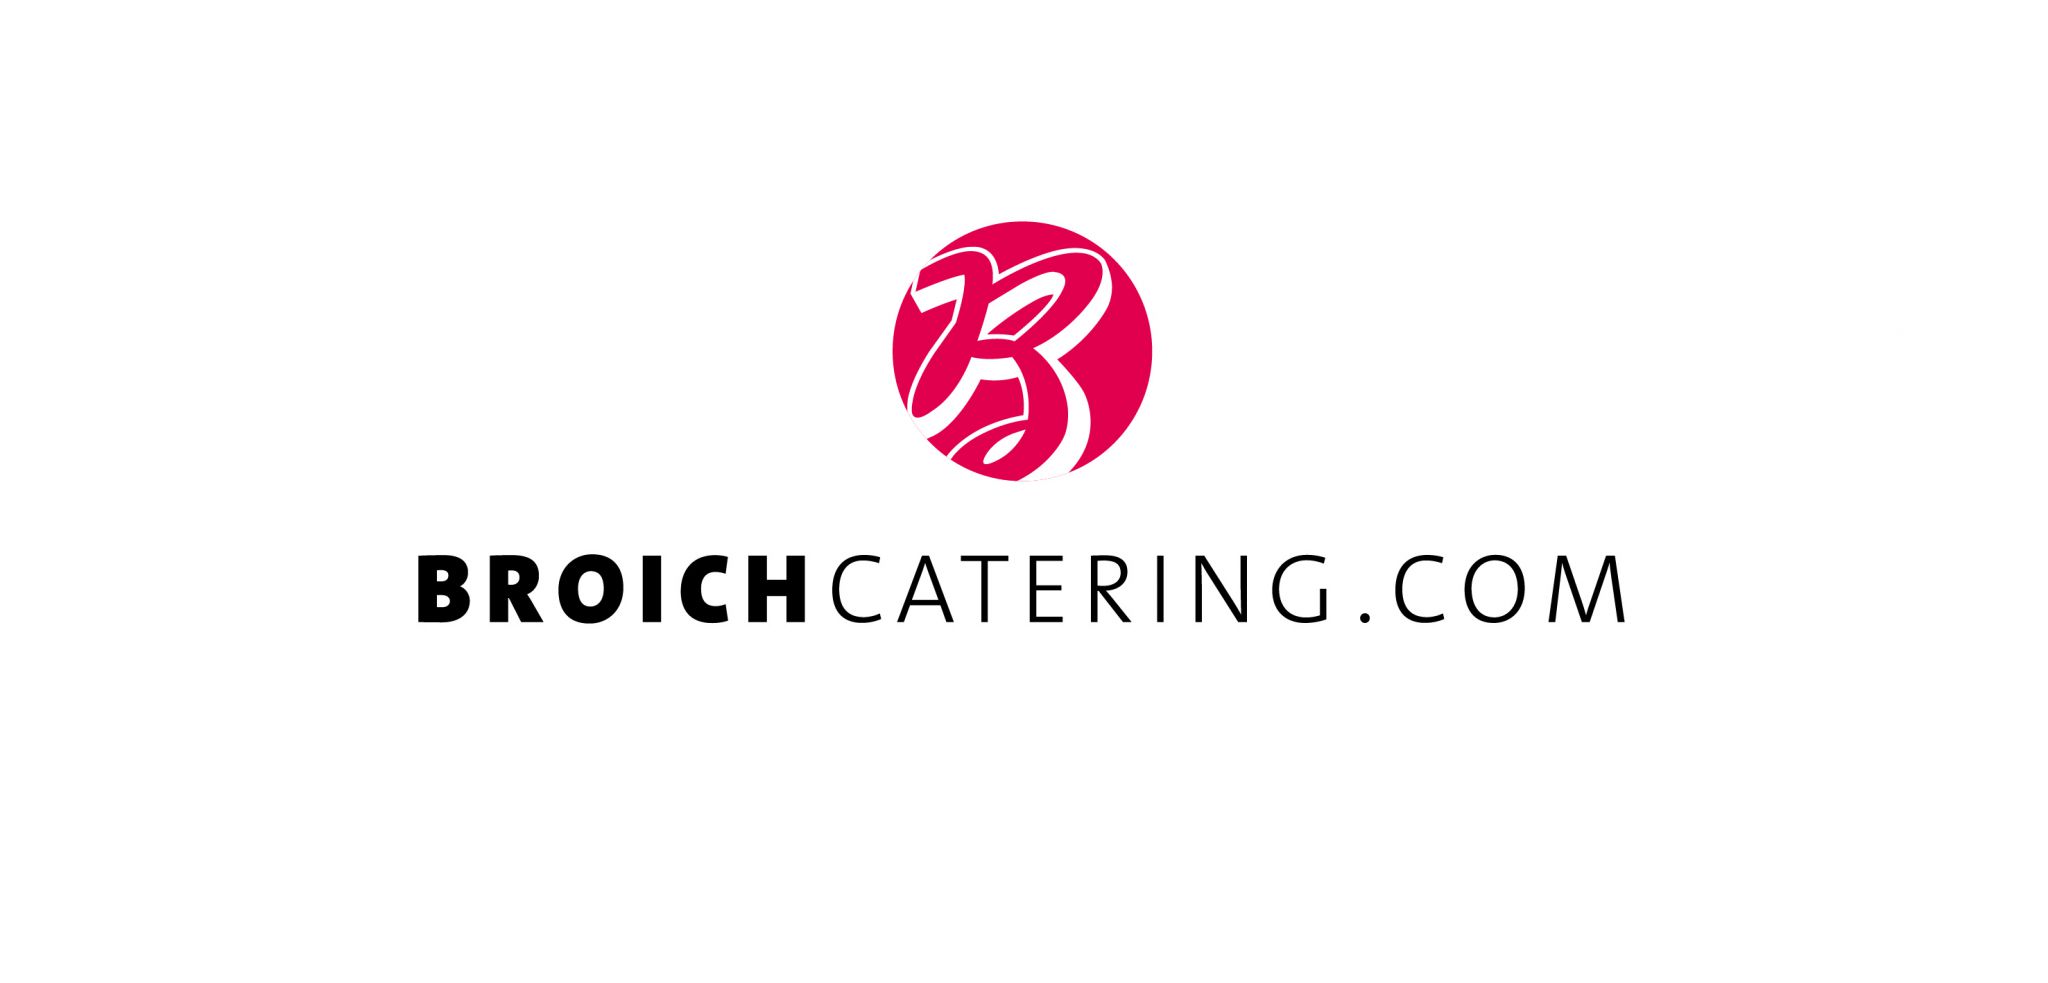 Broich_Catering.com_01.2014_4c_300_CS3-01-01